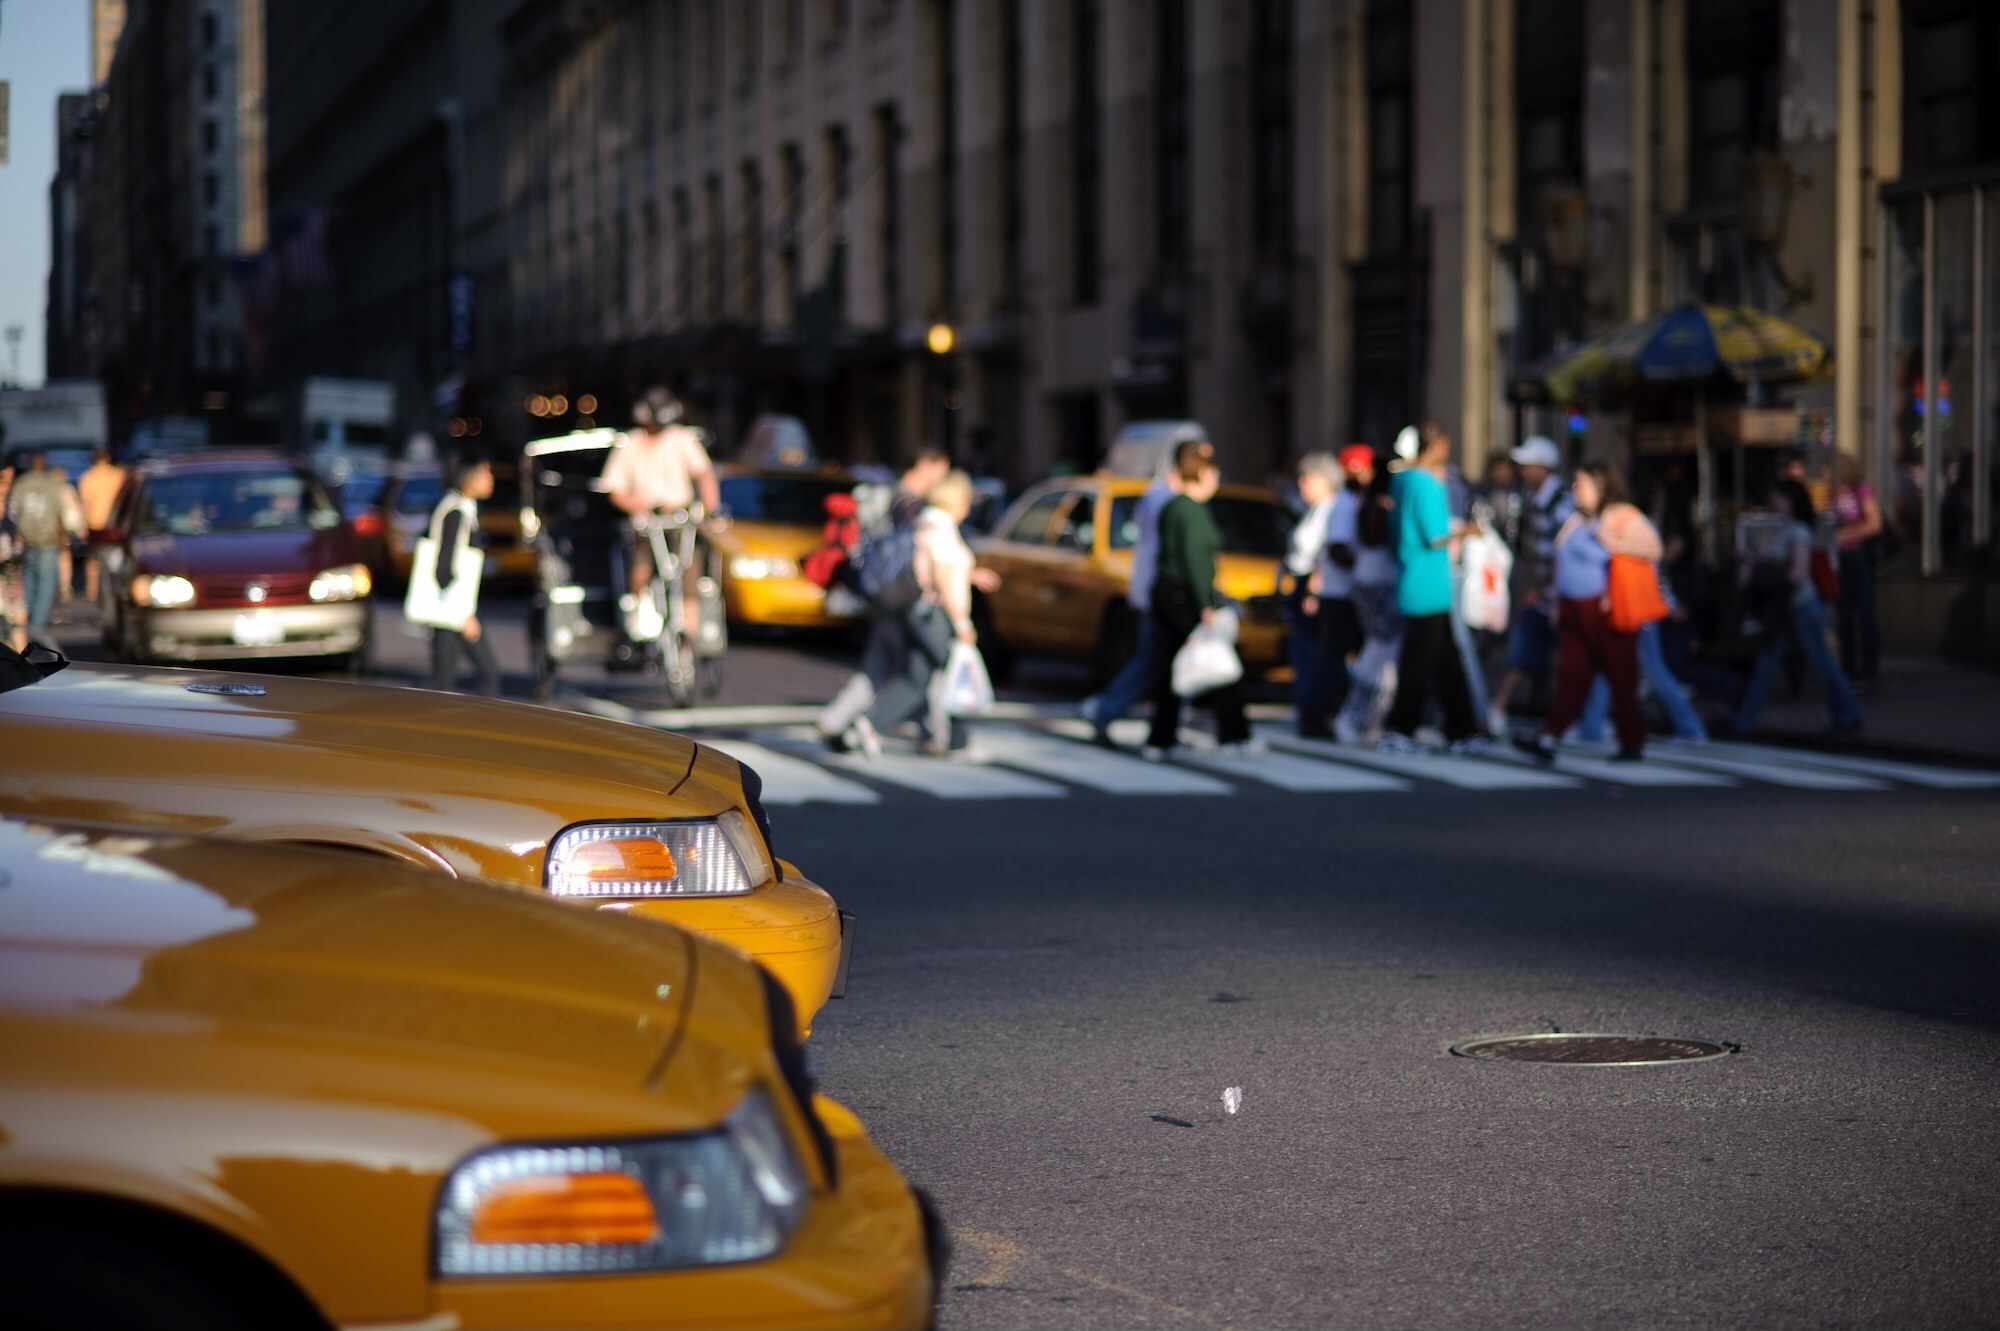 Par taxibilar som väntar vid en korsning medan folk korsar gatan i bakgrunden